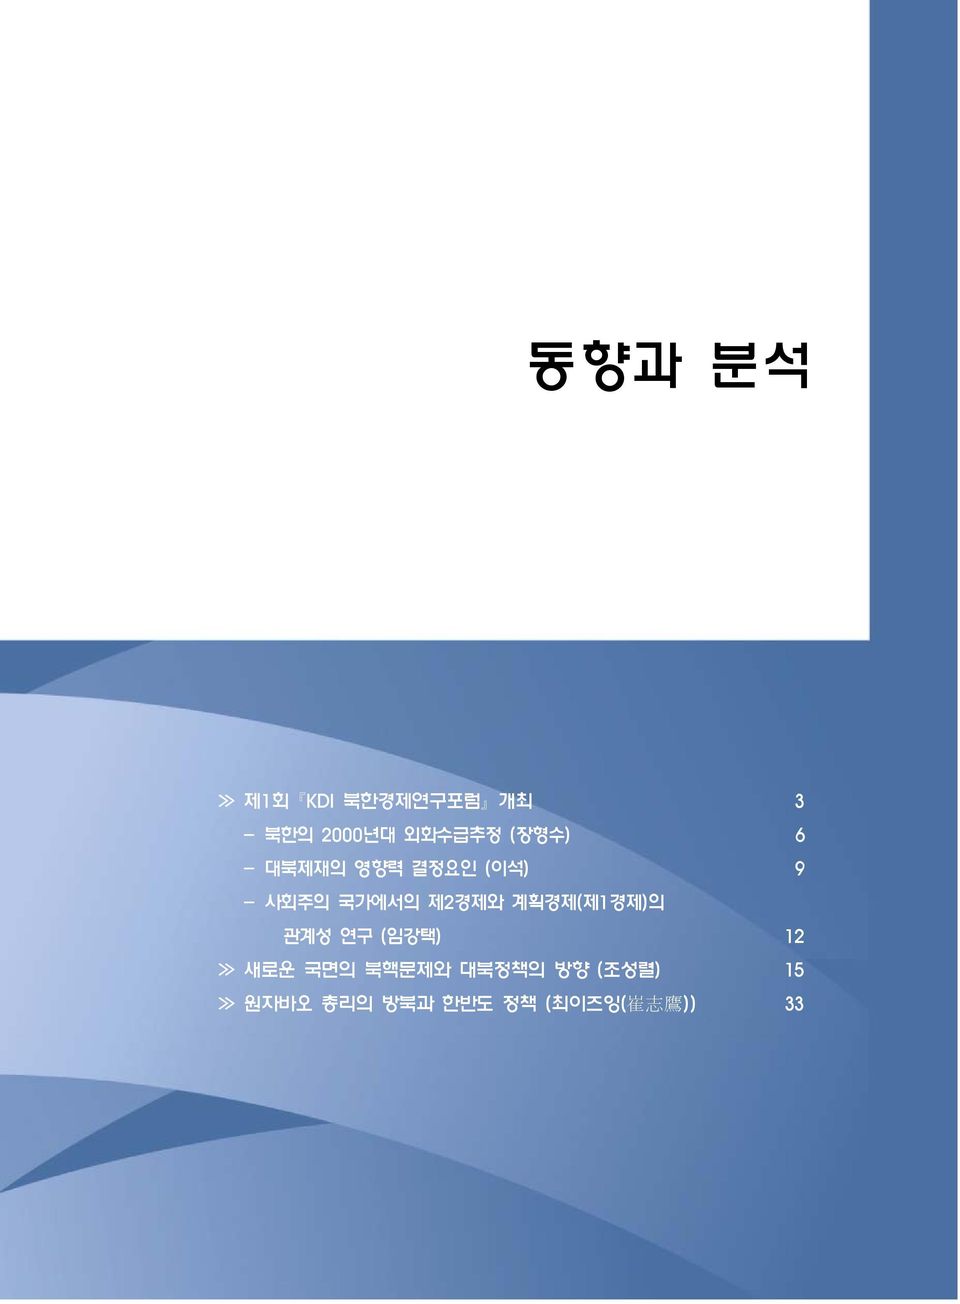 제2경제와 계획경제(제1경제)의 관계성 연구 (임강택) 12 새로운 국면의 북핵문제와